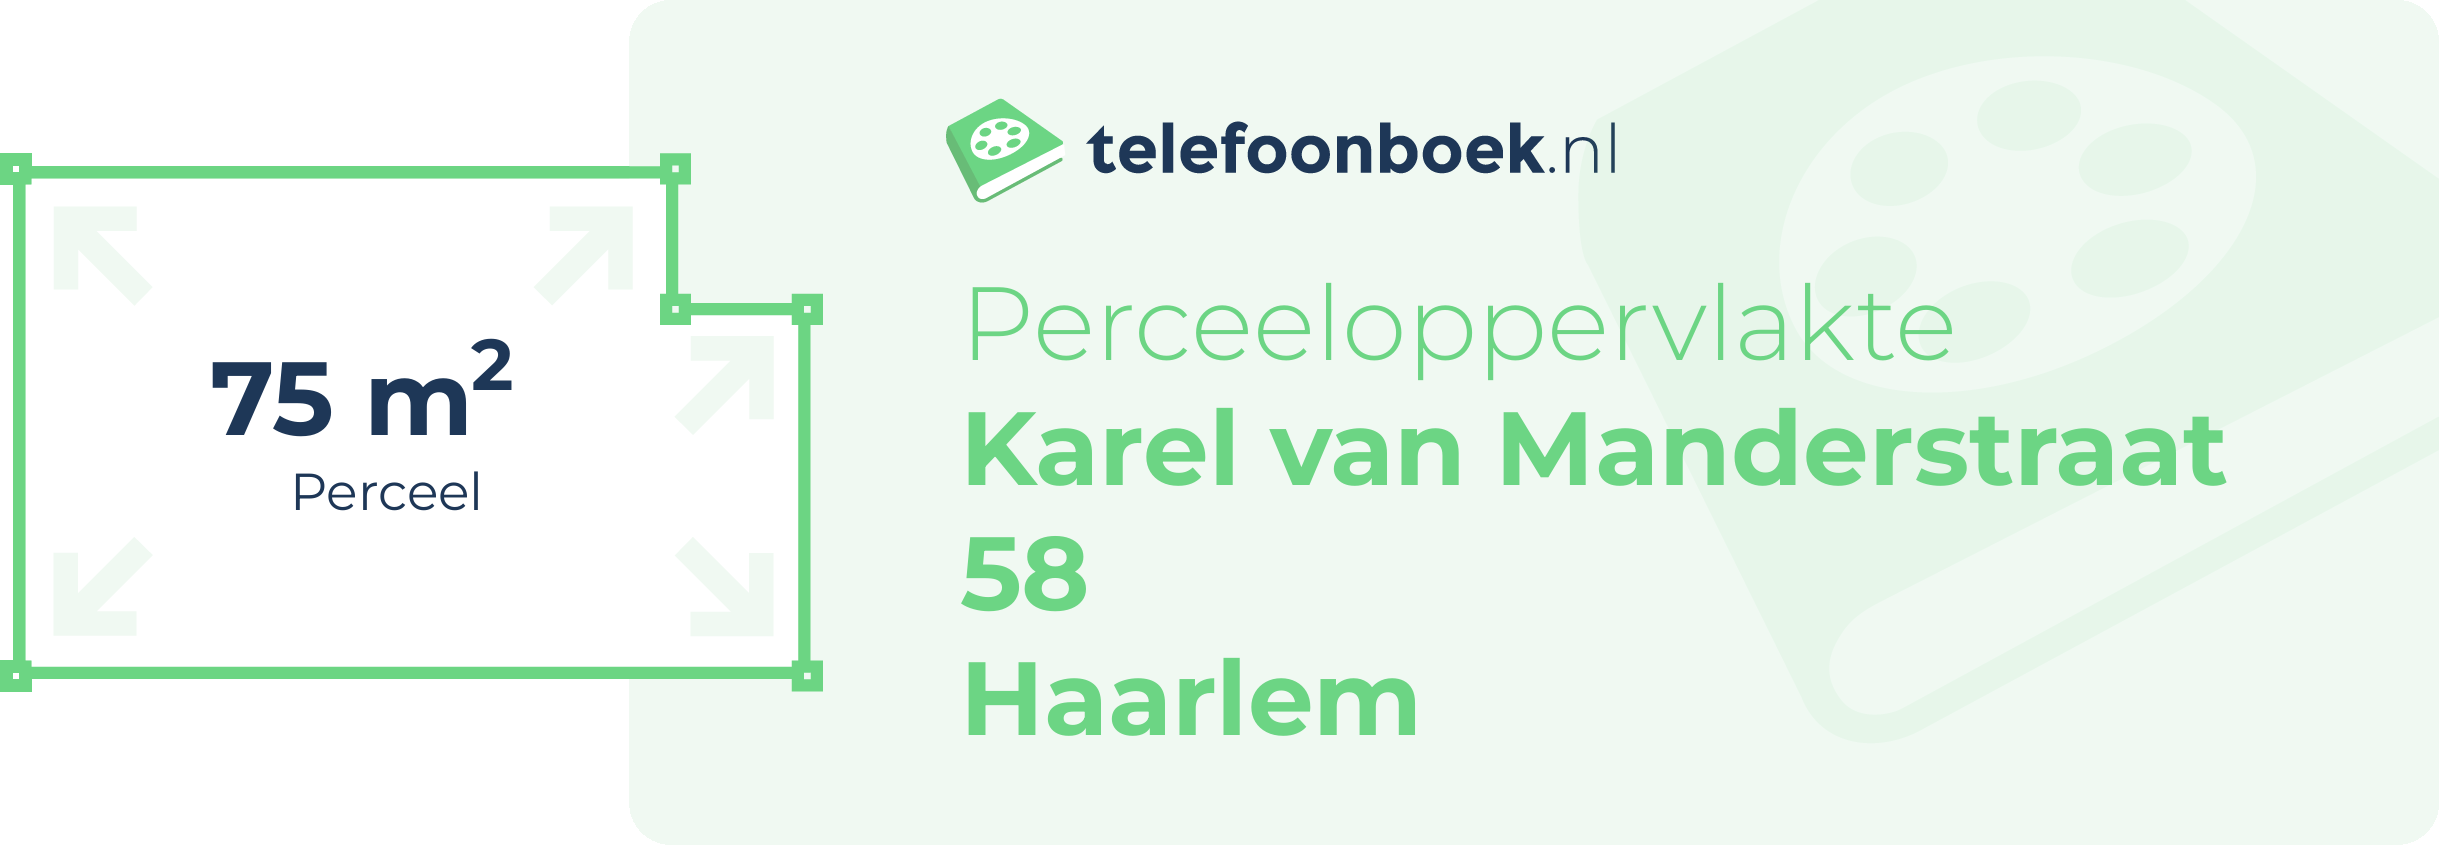 Perceeloppervlakte Karel Van Manderstraat 58 Haarlem